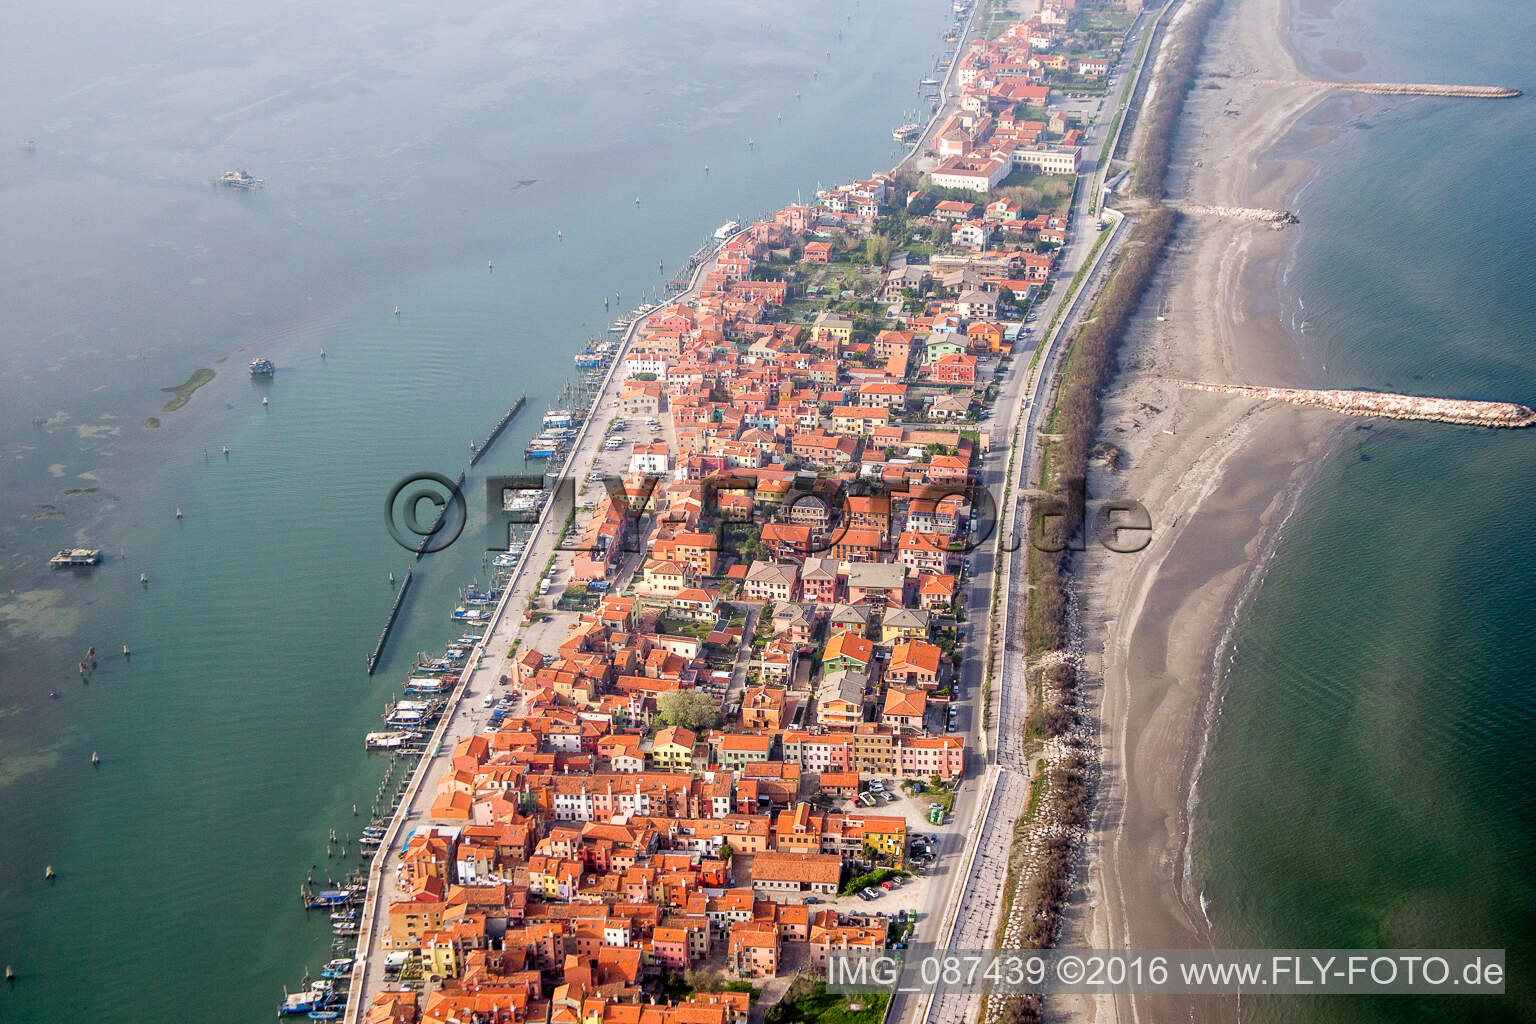 Siedlungsgebiet im Ortsteil Pellestrina in Venedig in Venetien, Italien vom Flugzeug aus